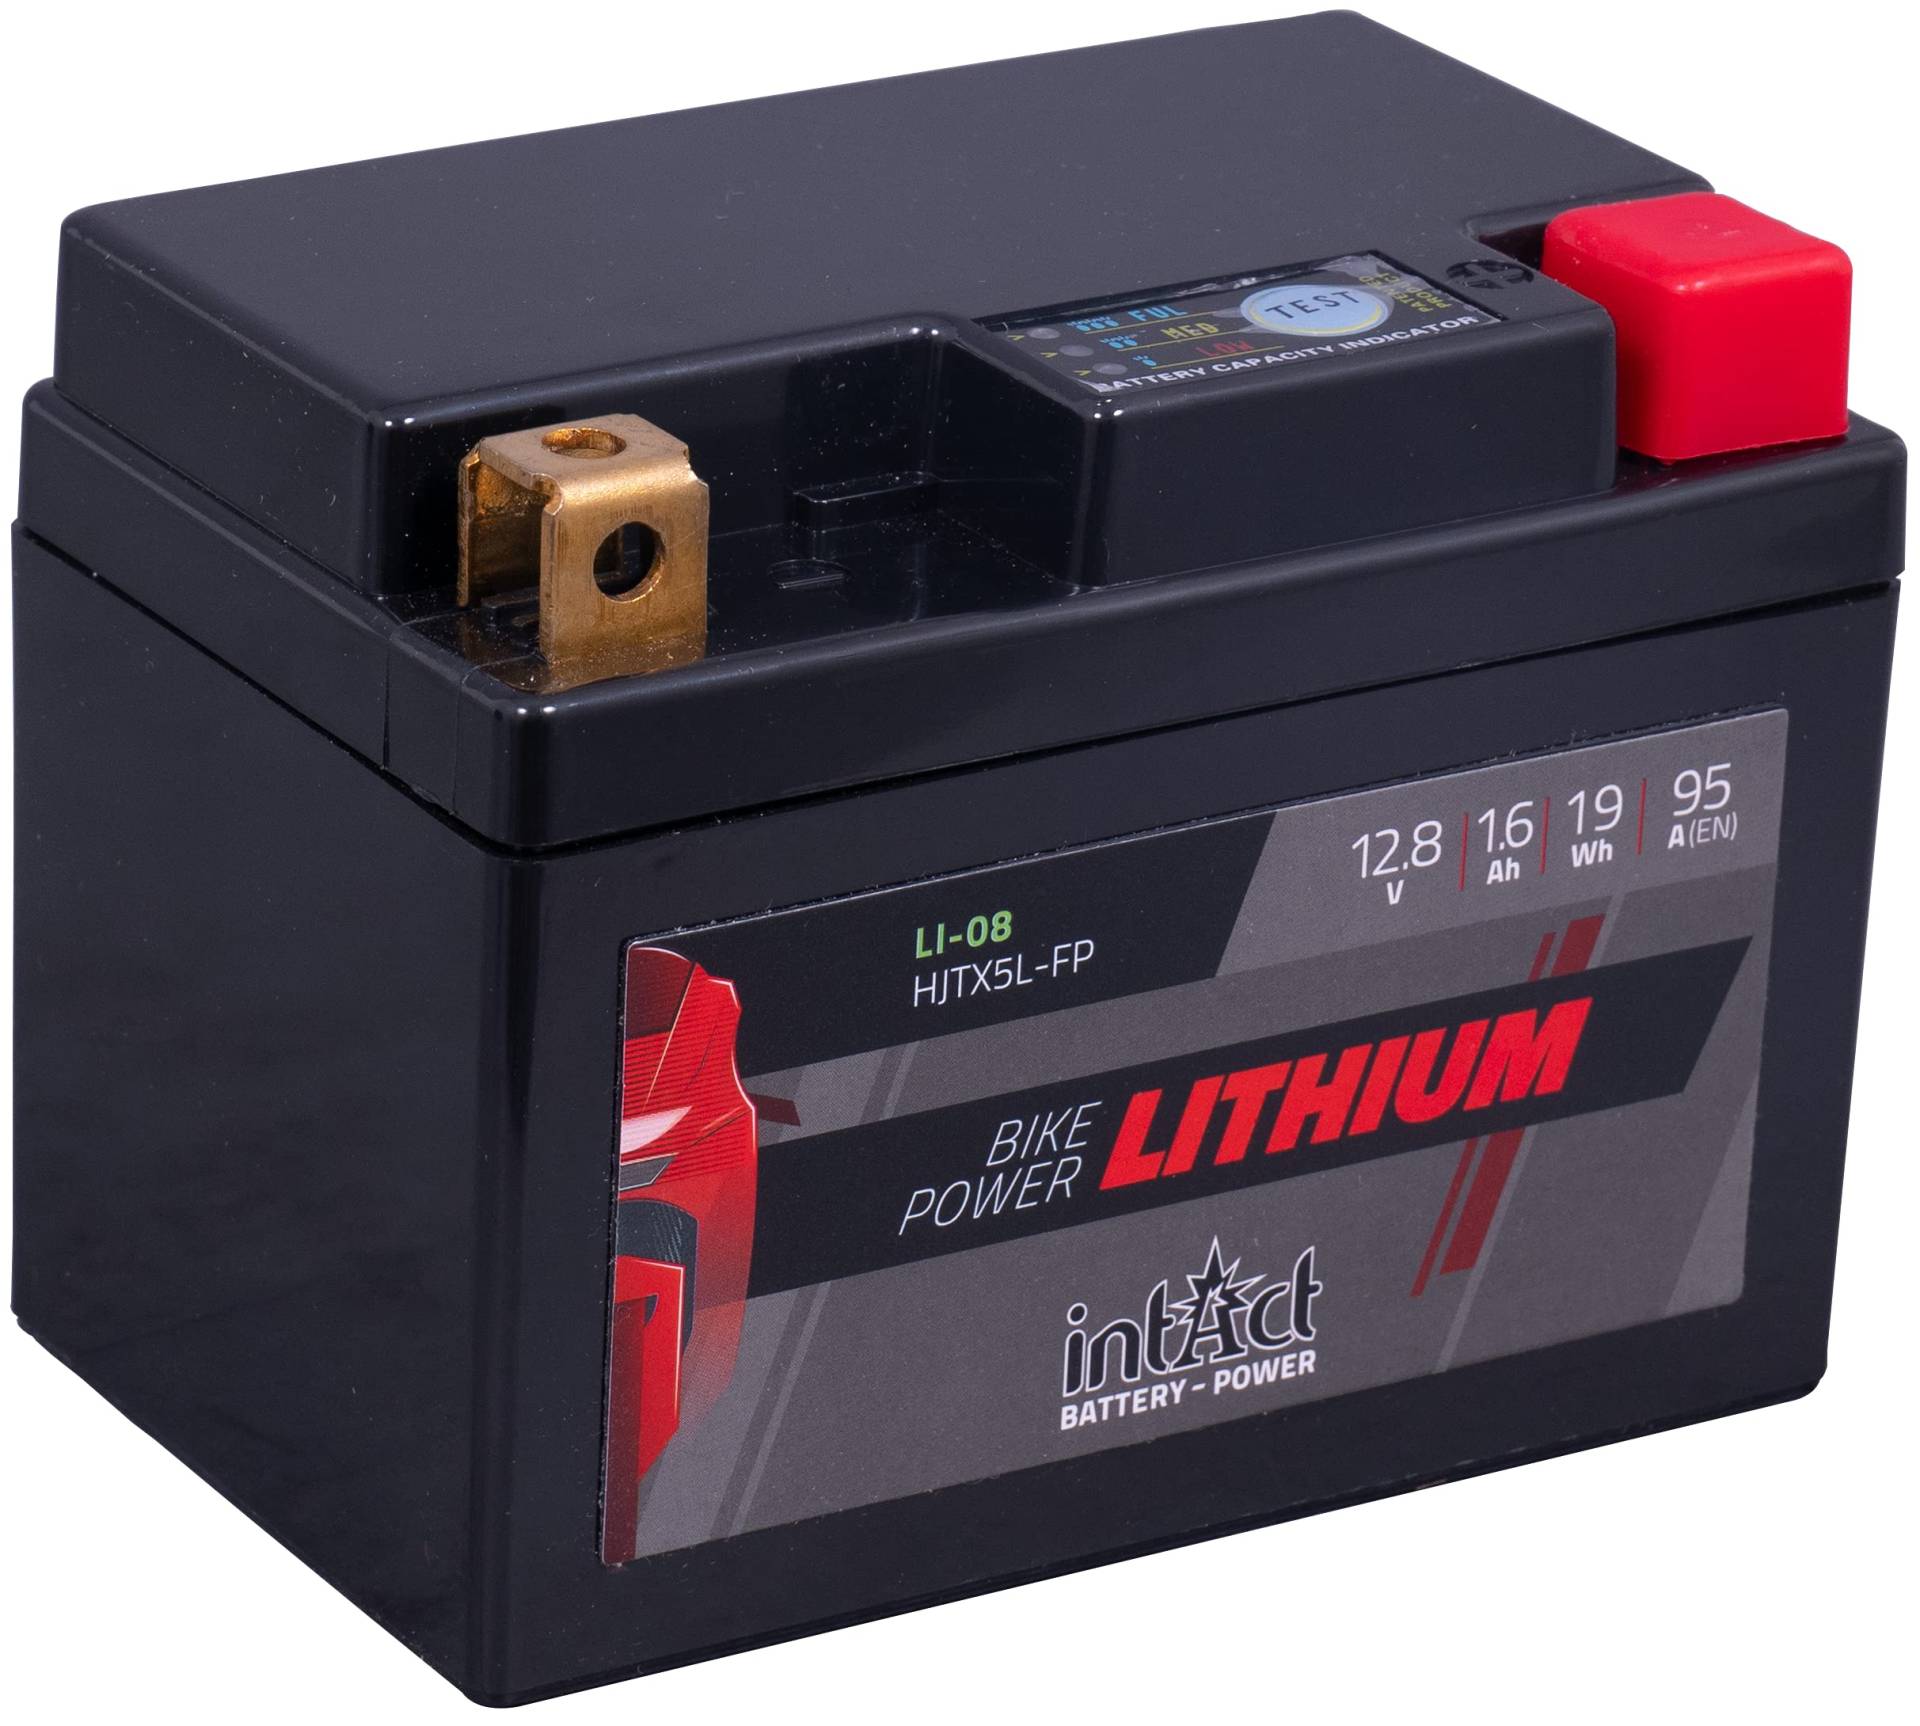 intAct - LITHIUM MOTORRADBATTERIE | Batterie für Roller, Motorrad, Quads uvm. Bis zu 75% Gewichtseinsparung | Bike-Power LI-08, HJTX5L-FP, 12,8V Batterie, 1,6 AH (c10), 19 Wh, 95 A (CCA) | Maße: 113x70x85mm von Intact